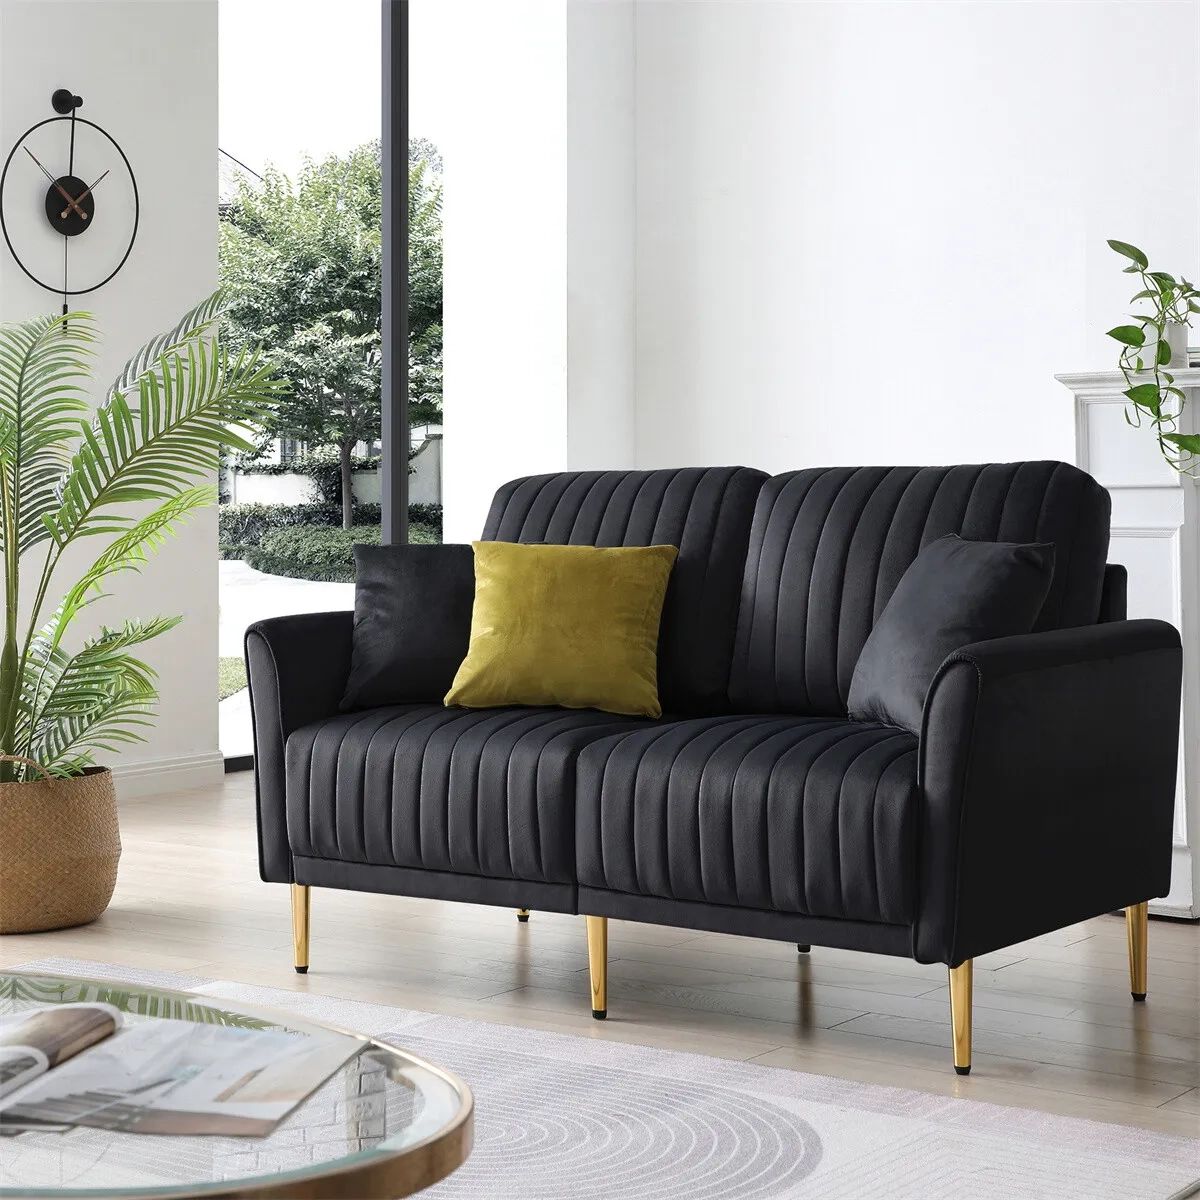 Modern Velvet 2 Seater Sofa Chanel Tufted Loveseat For Living Room Office  Black | Ebay In Black Velvet 2 Seater Sofa Beds (View 4 of 15)